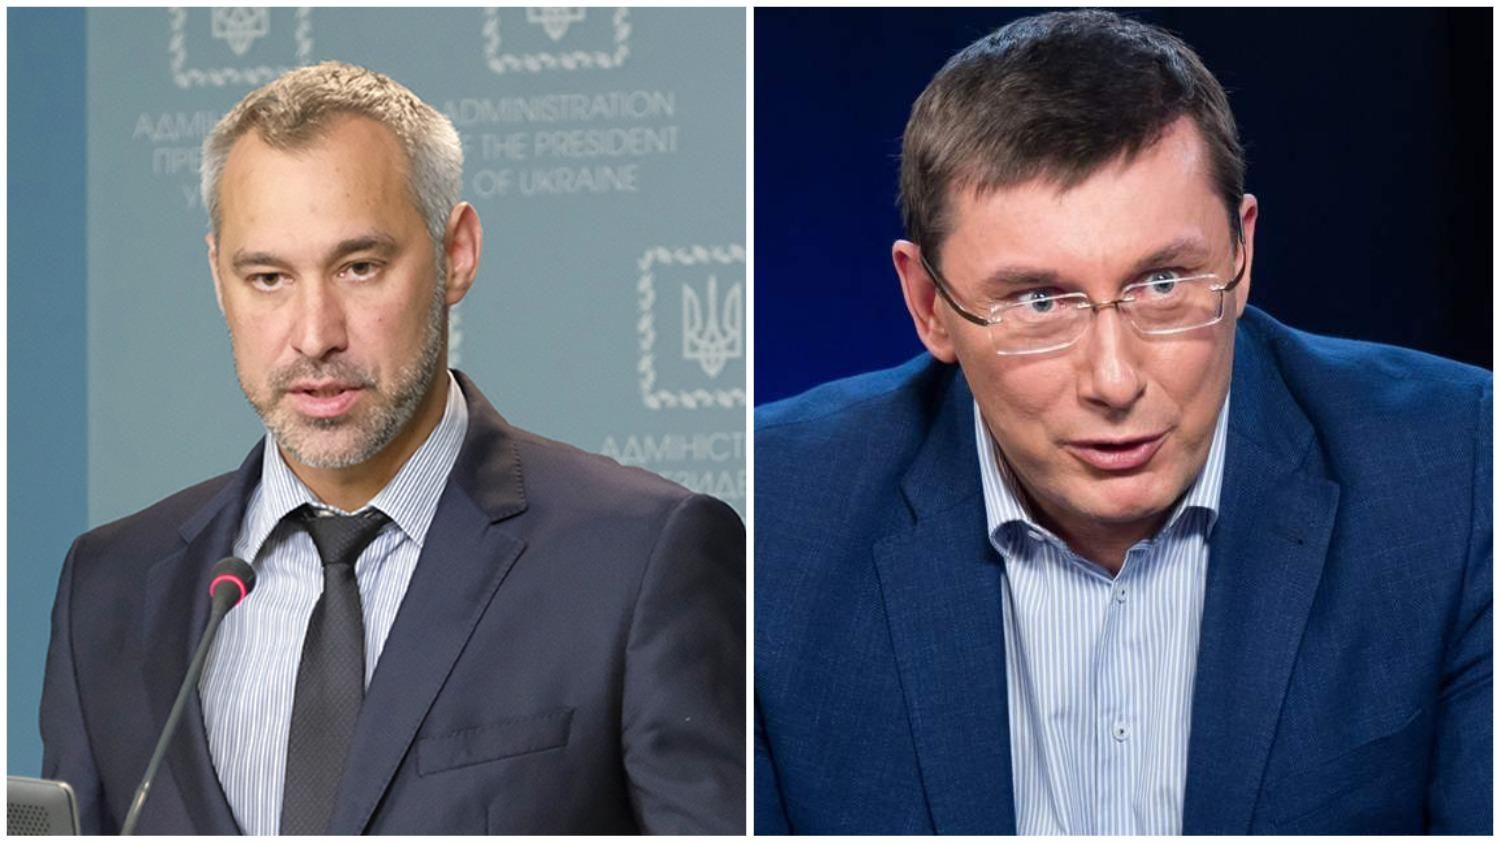 Производства не было, - Рябошапка прокомментировал заявление Луценко относительно Медведчука